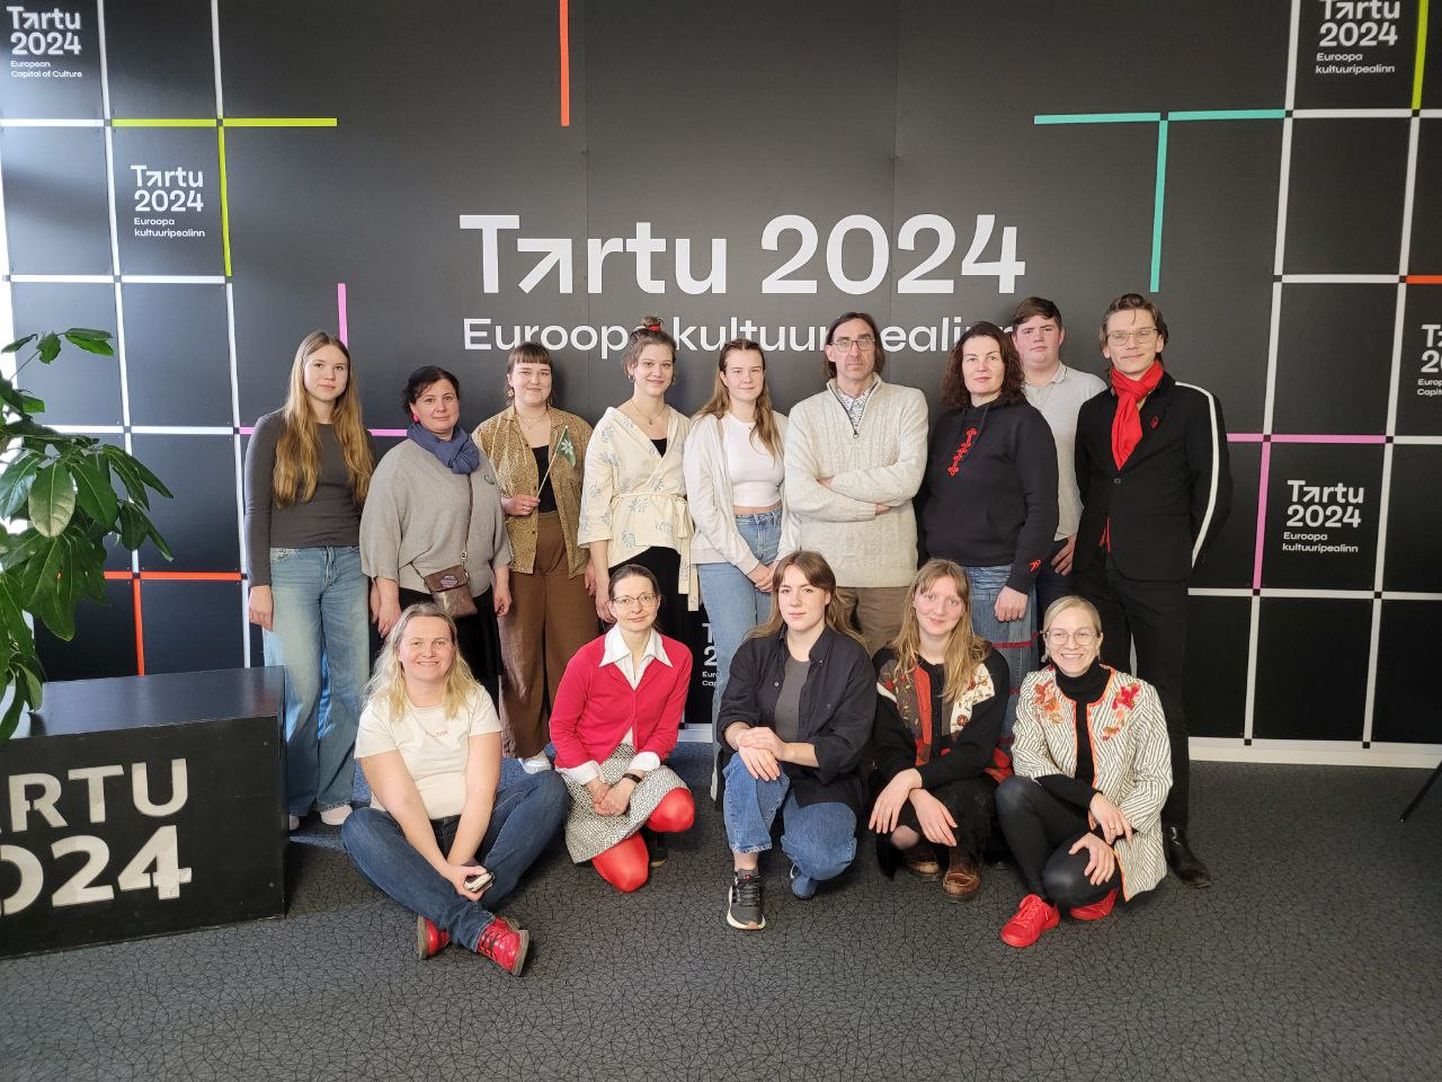 Seto, võro ja mulgi noored koos Tartu 2024 ja kultuuriinstituutide juhtidega koostööprogrammi esimesel kohtumisel